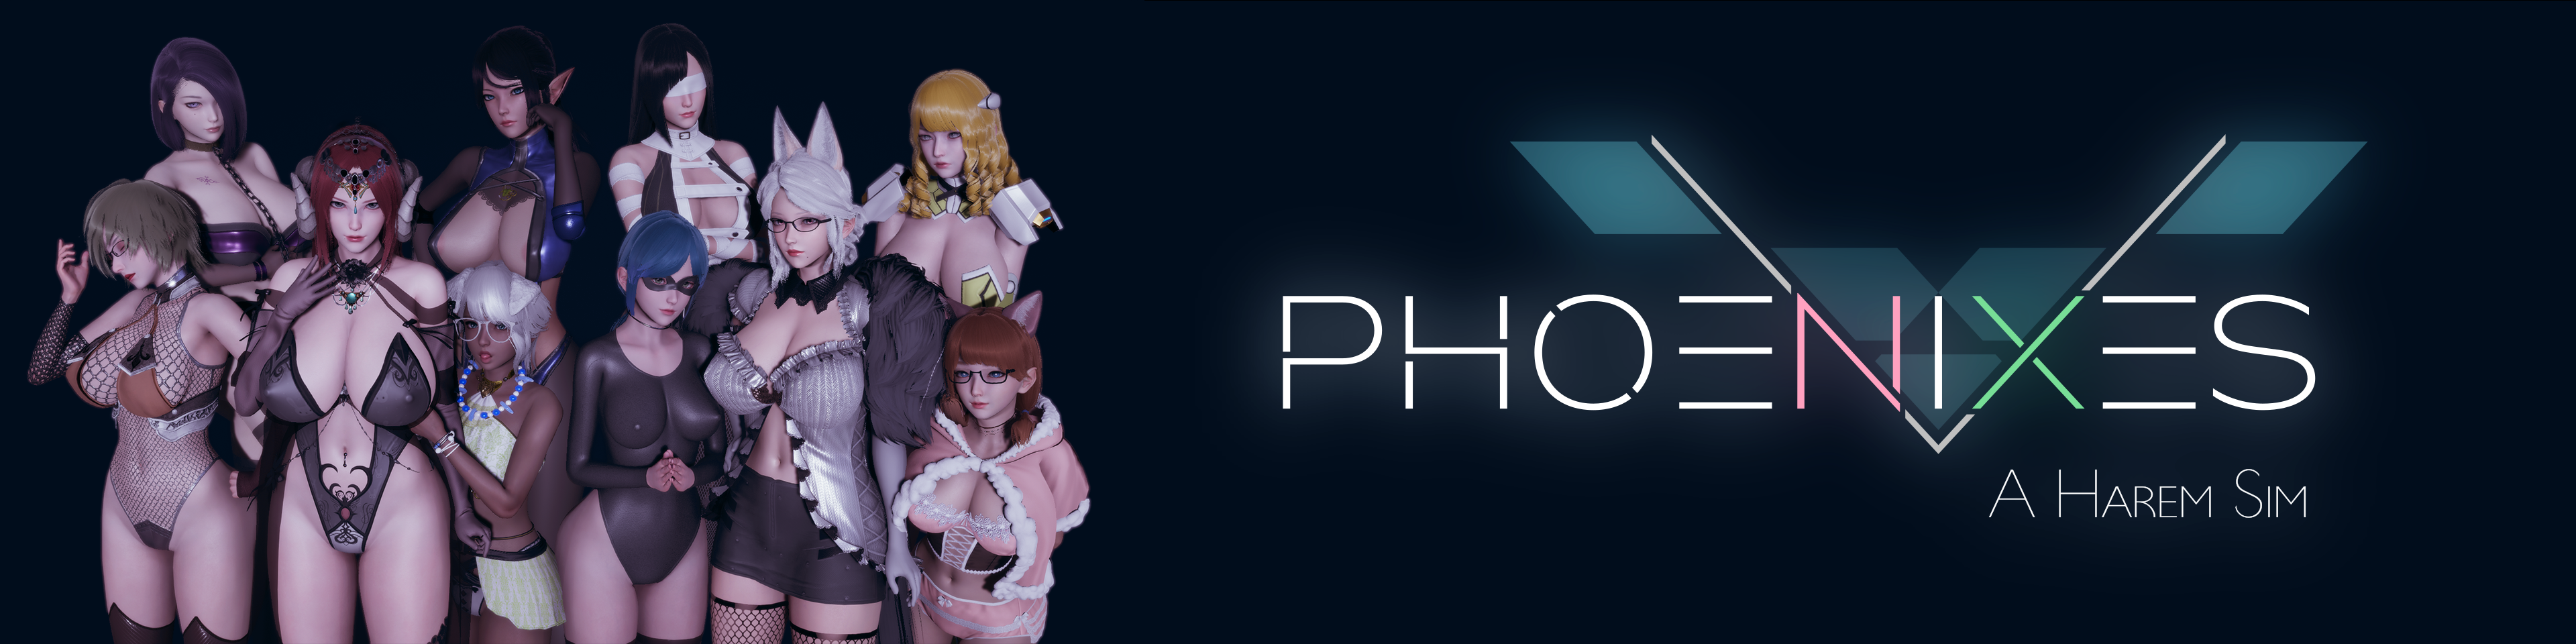 Phoenixes1.png